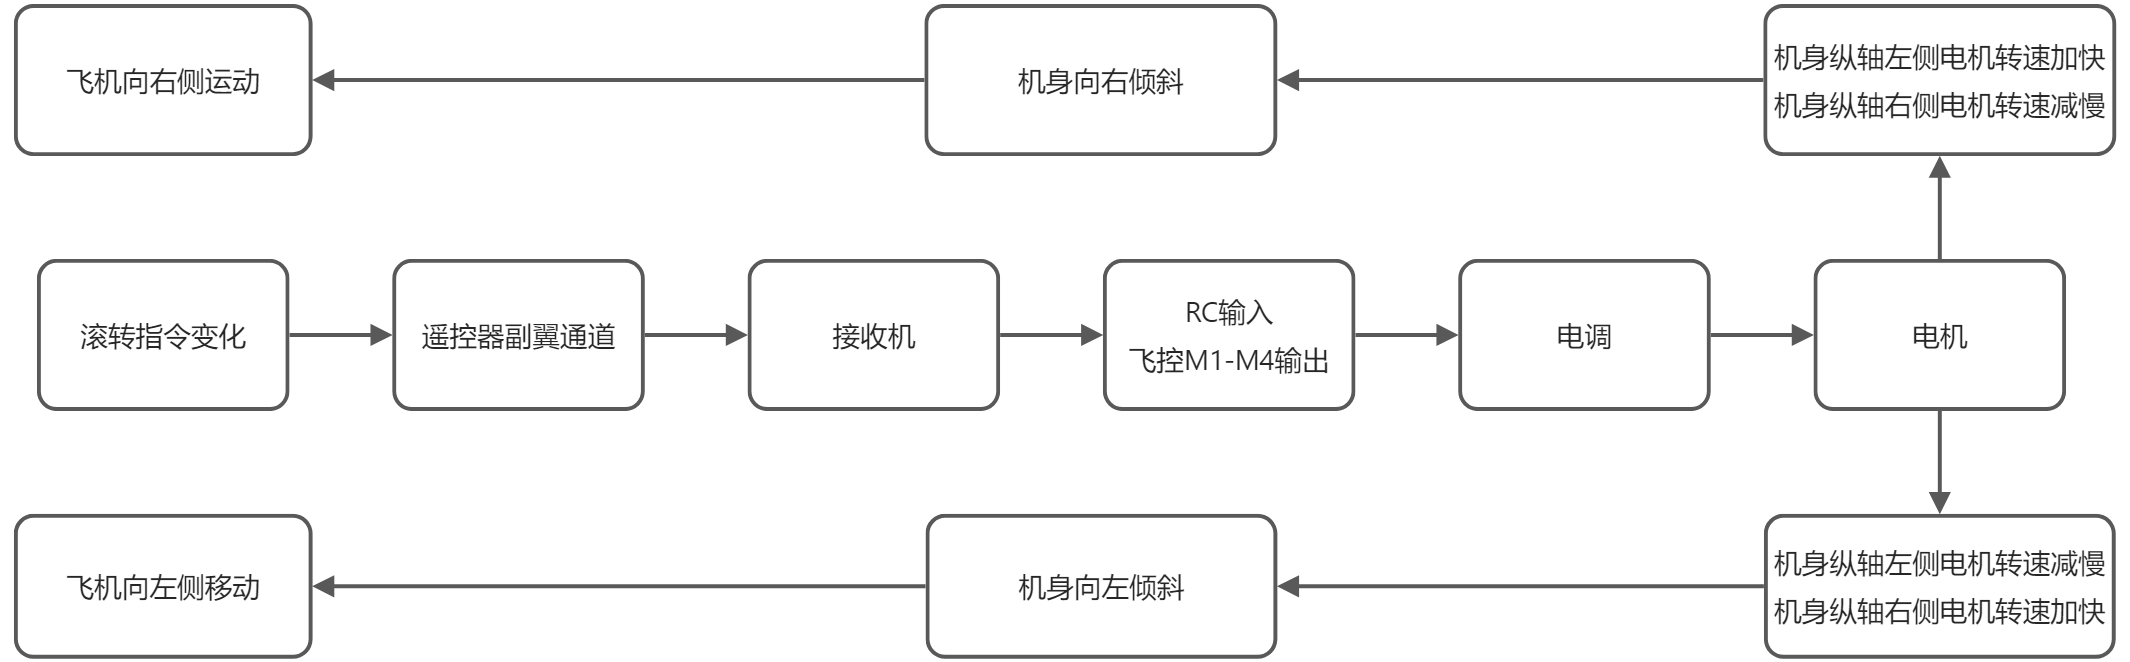 yuque_diagram(4).jpg